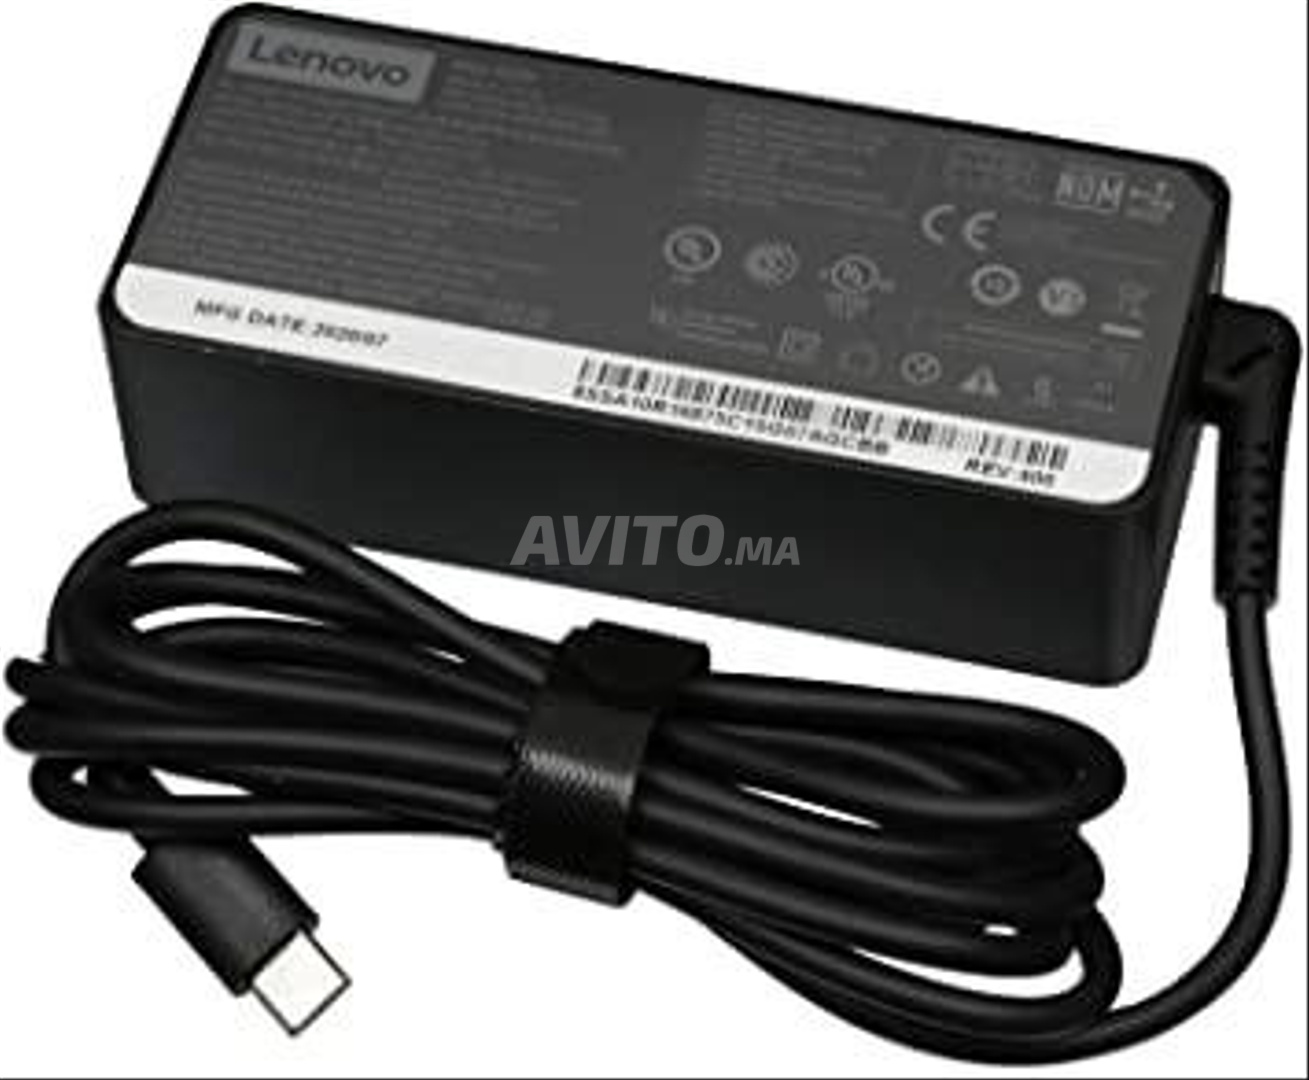 Chargeur Lenovo 65W USB Type-C Adaptateur Secteur pour Ordinateur Portable  pour Lenovo